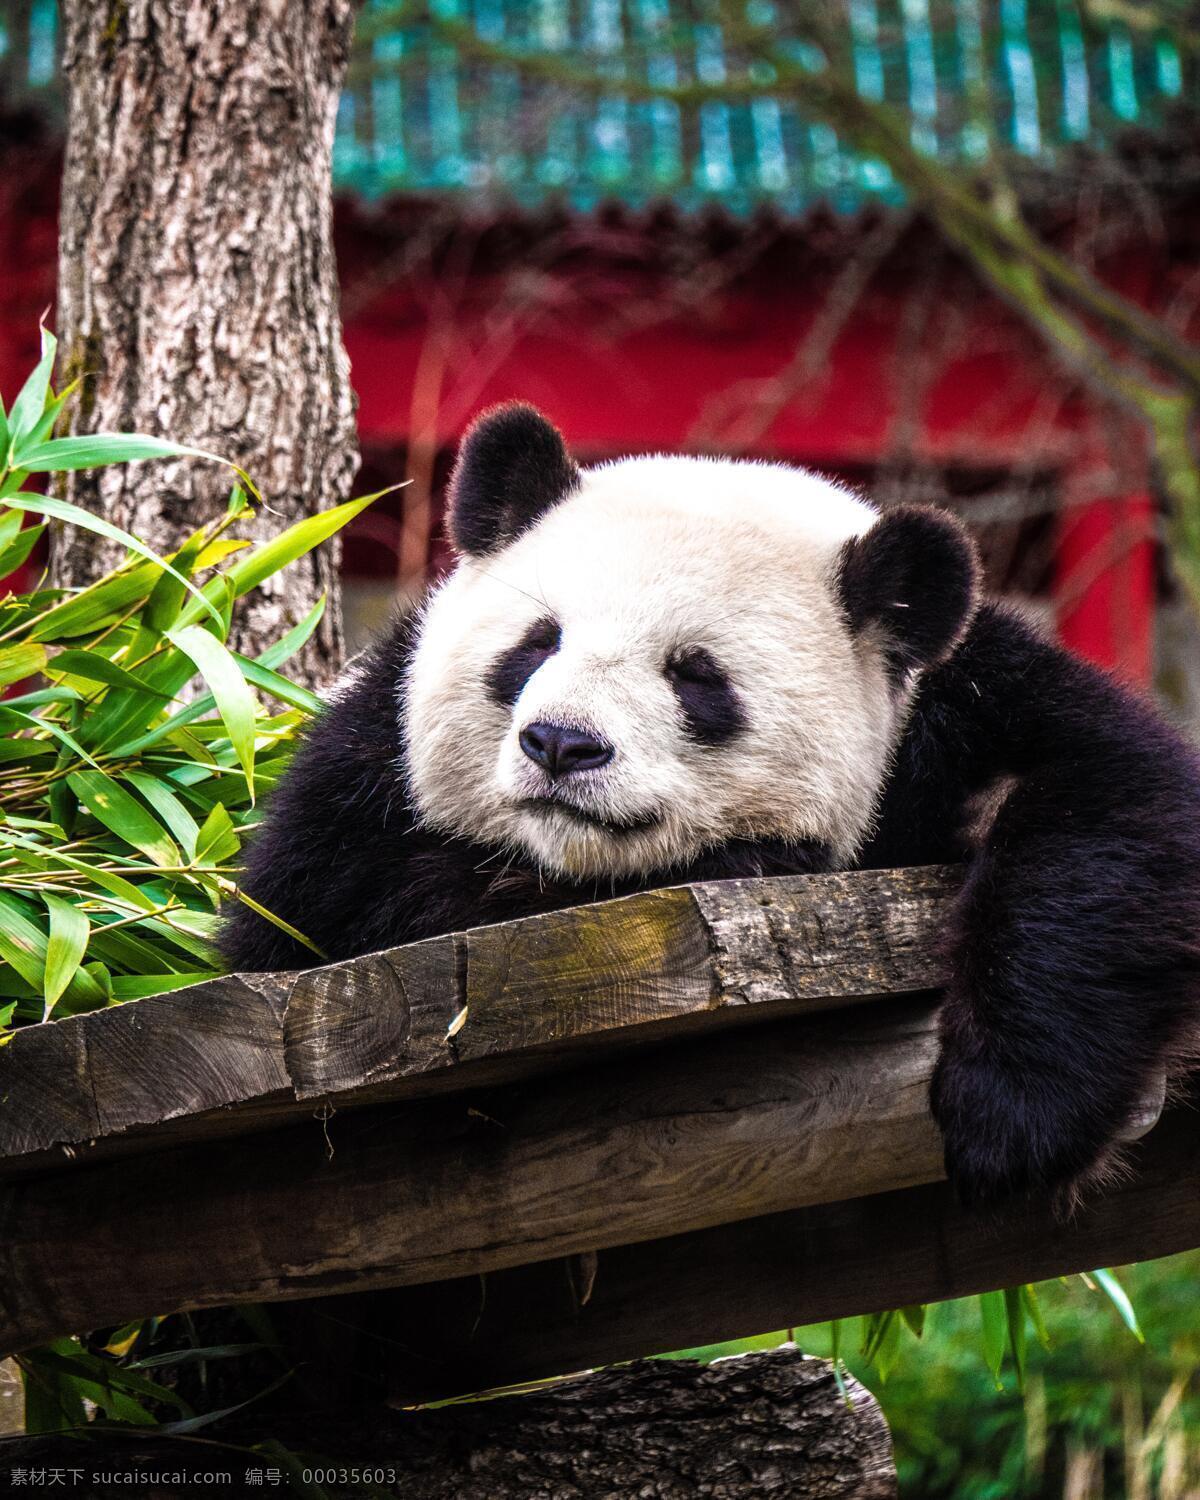 熊猫高清照片 保护动物 国宝 熊猫 熊猫照片 熊猫摄影 熊猫睡觉 可爱熊猫 熊猫爬 动物 生物世界 野生动物 高清